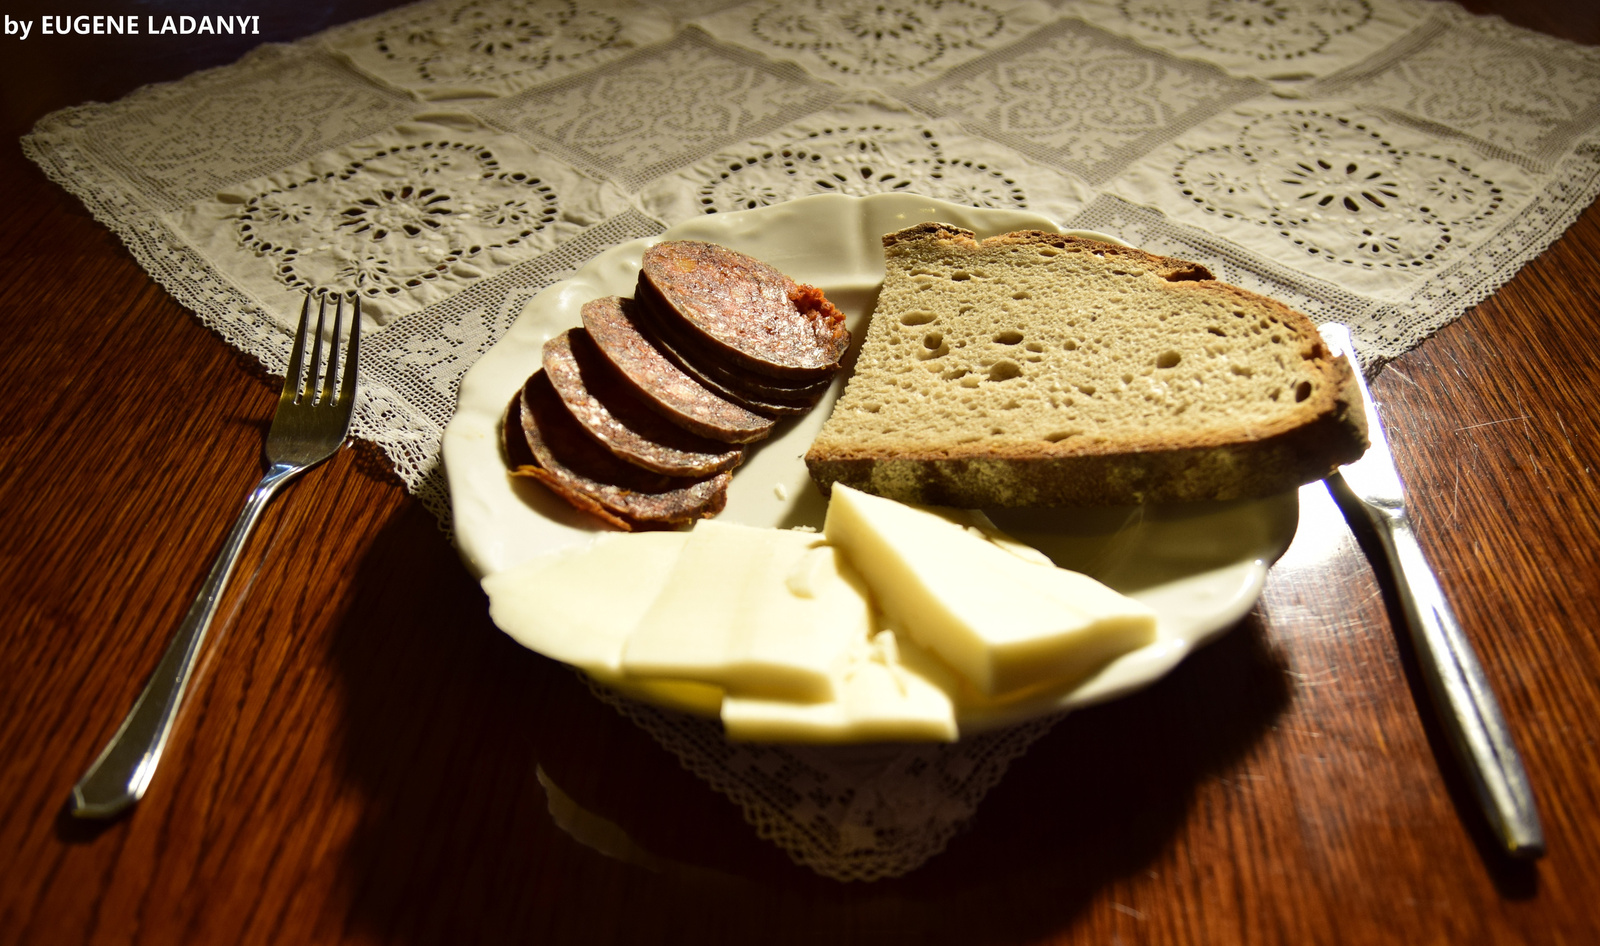 Szent-Györgyi Albert vacsorája (werk fotó)